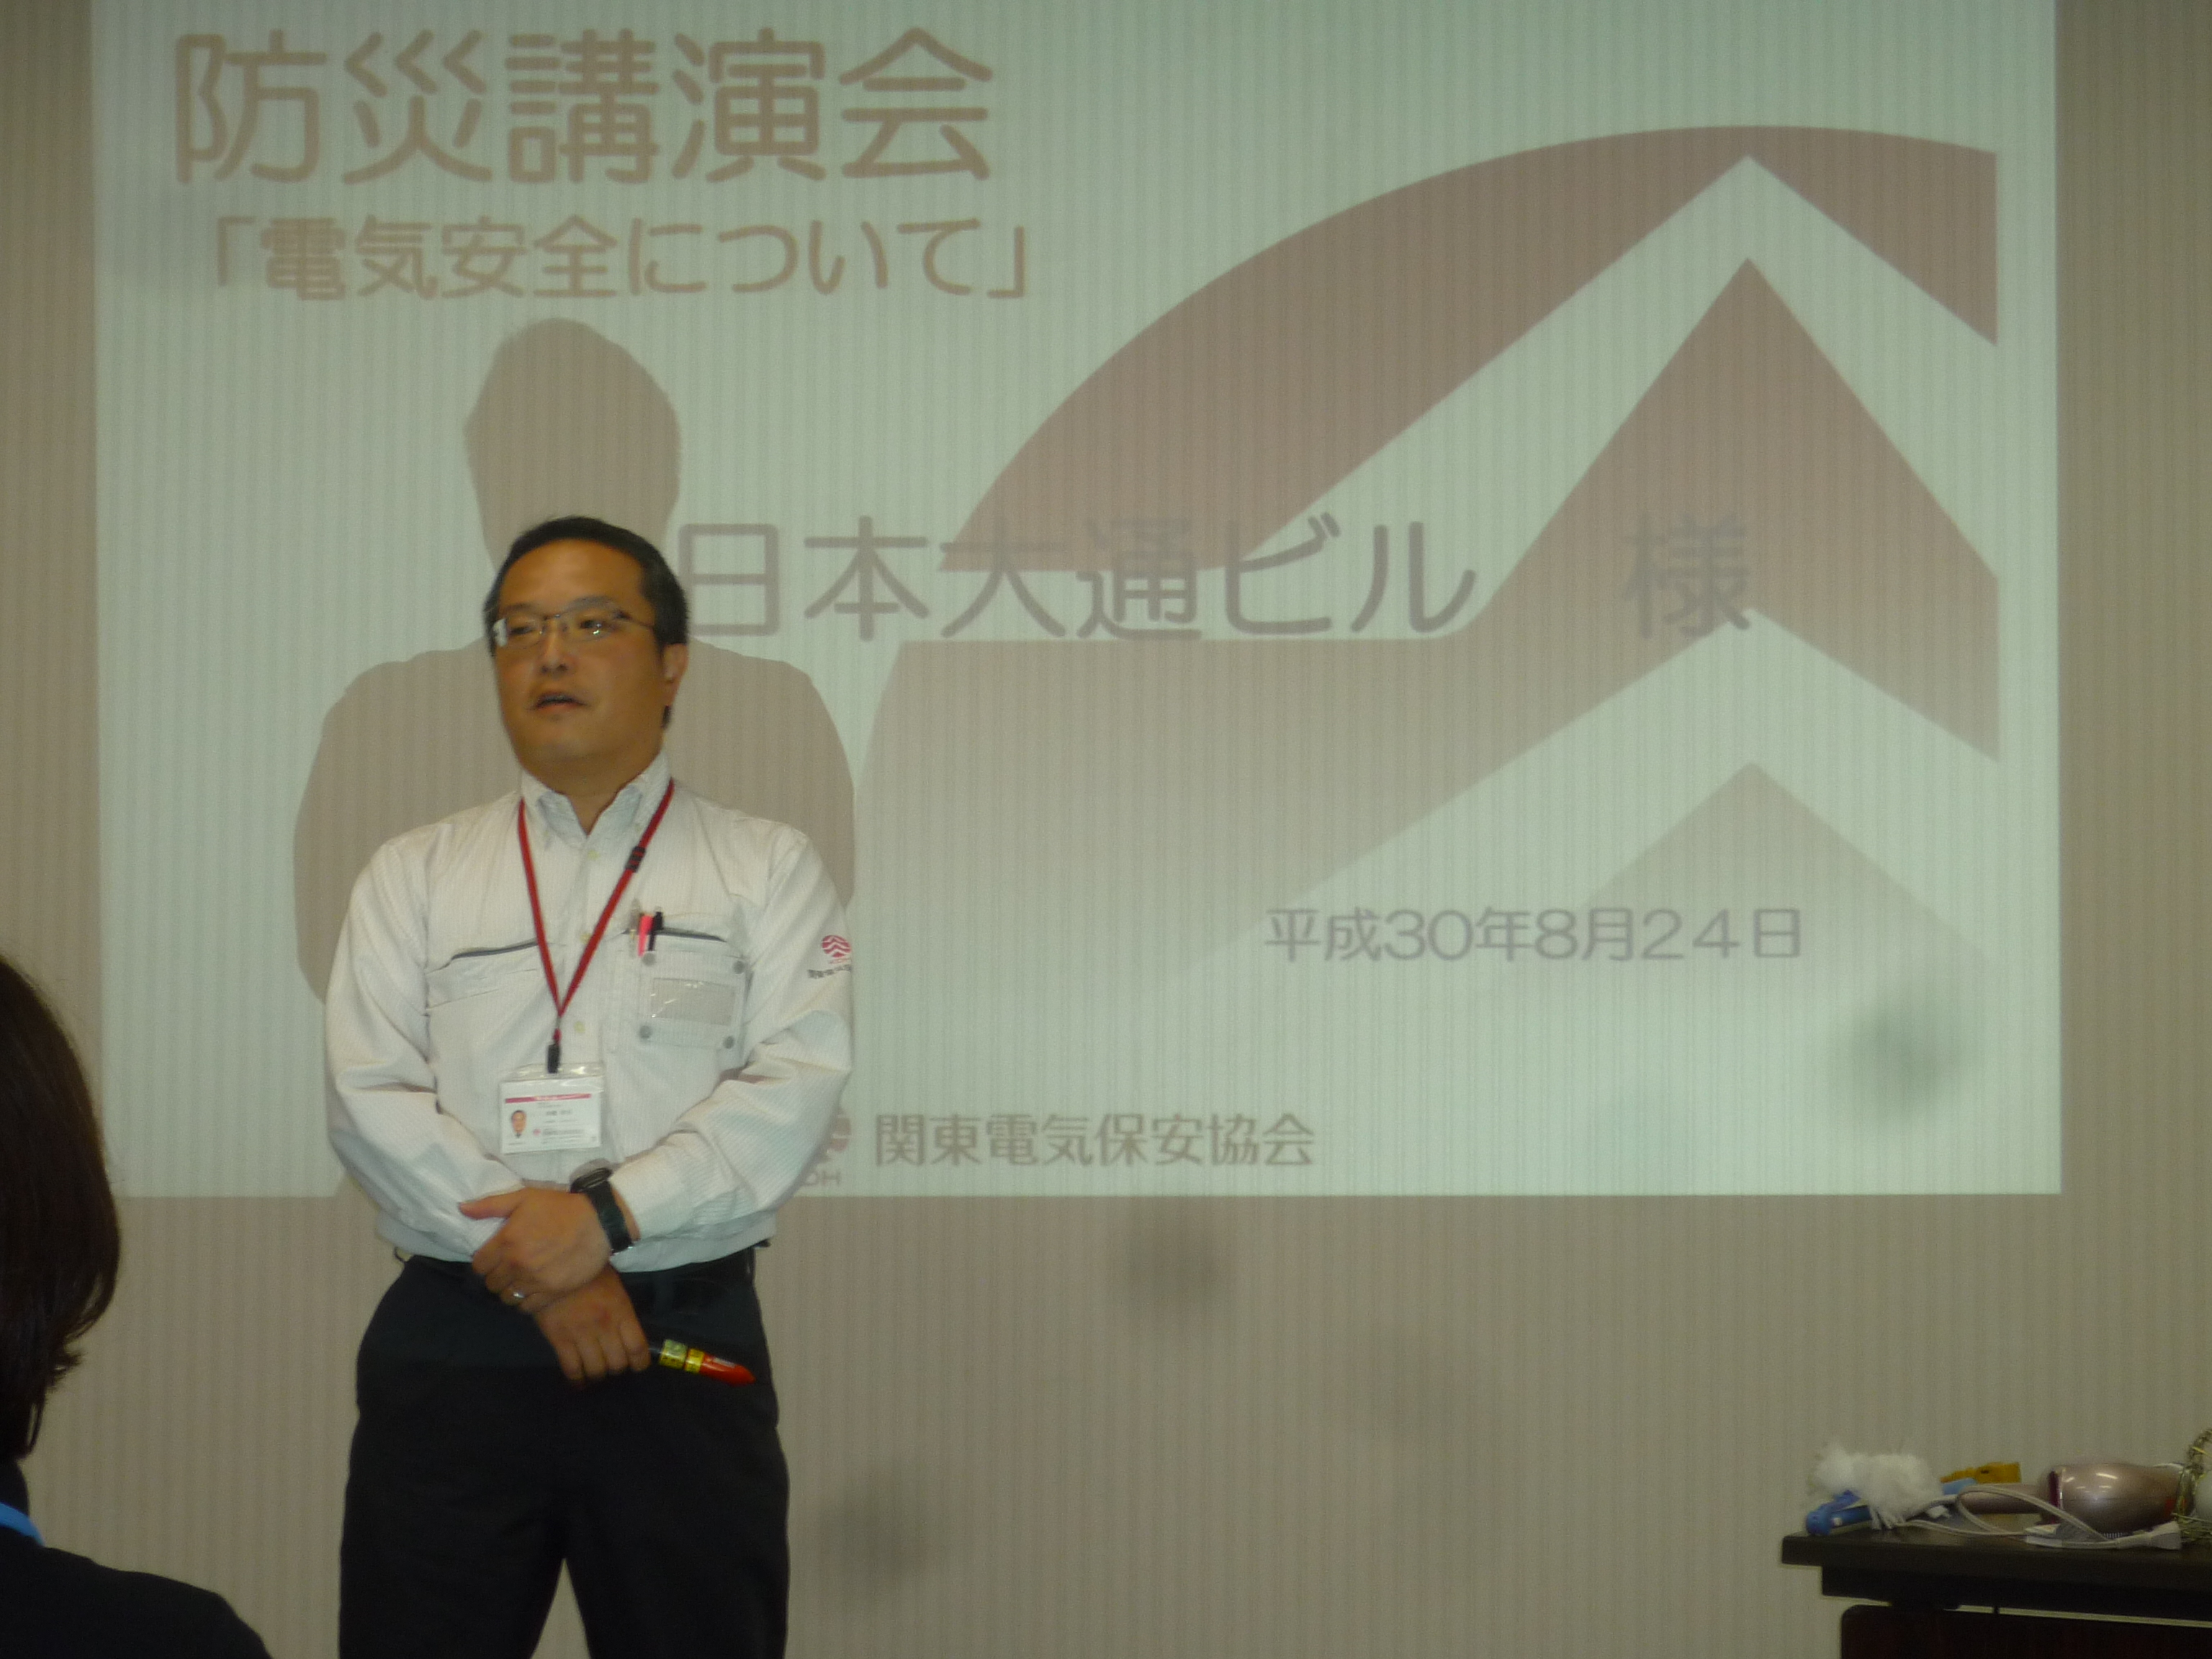 8月24日に日本大通ビルの防災講演会 電気の安全について を行いました 松村株式会社